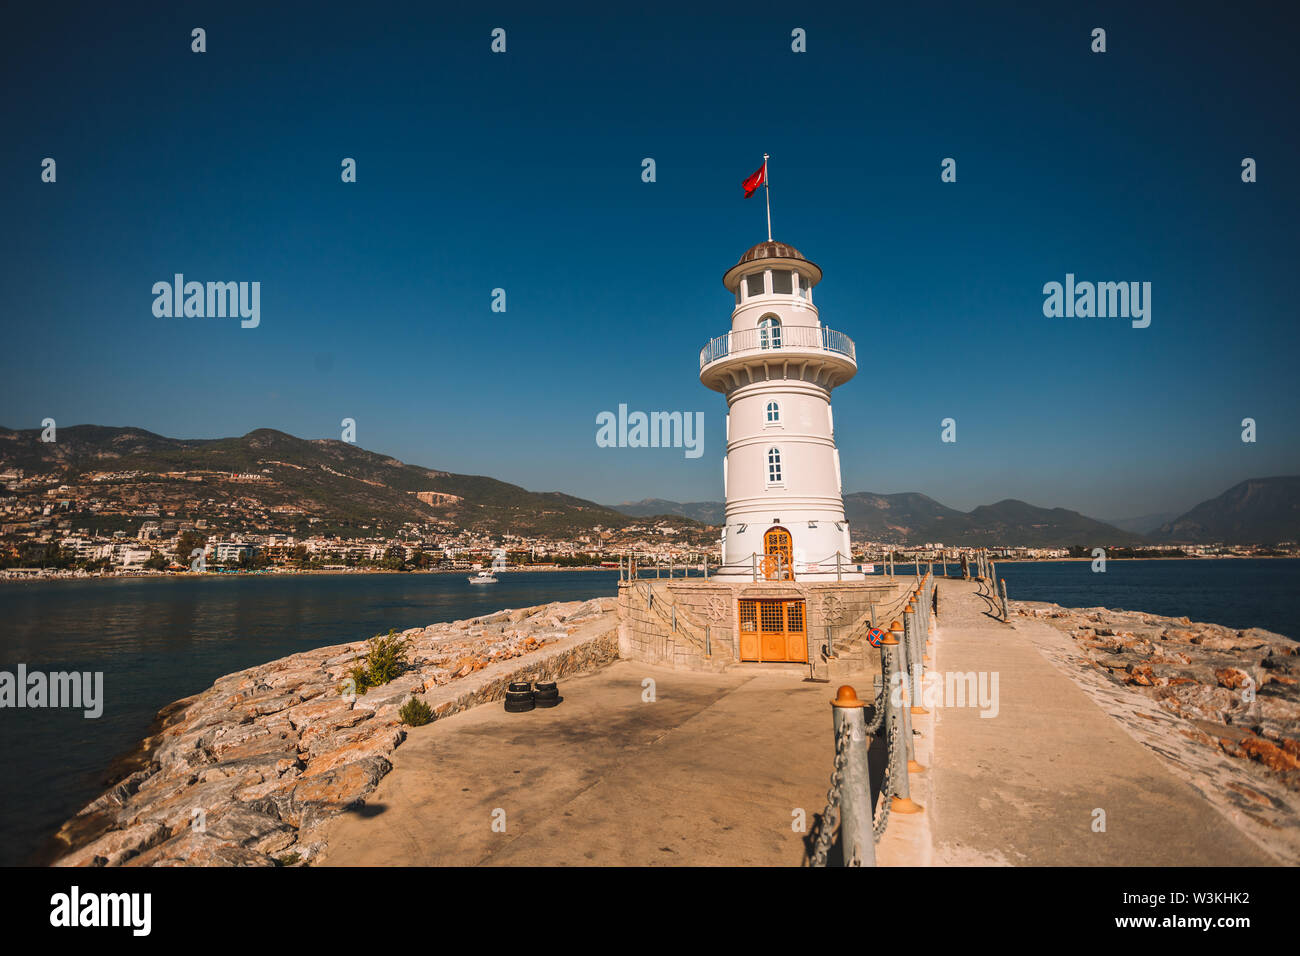 Nice et petit phare blanc à port d'Alanya avec de grands vieux bateau en arrière-plan, de la Turquie, Antalya district Banque D'Images